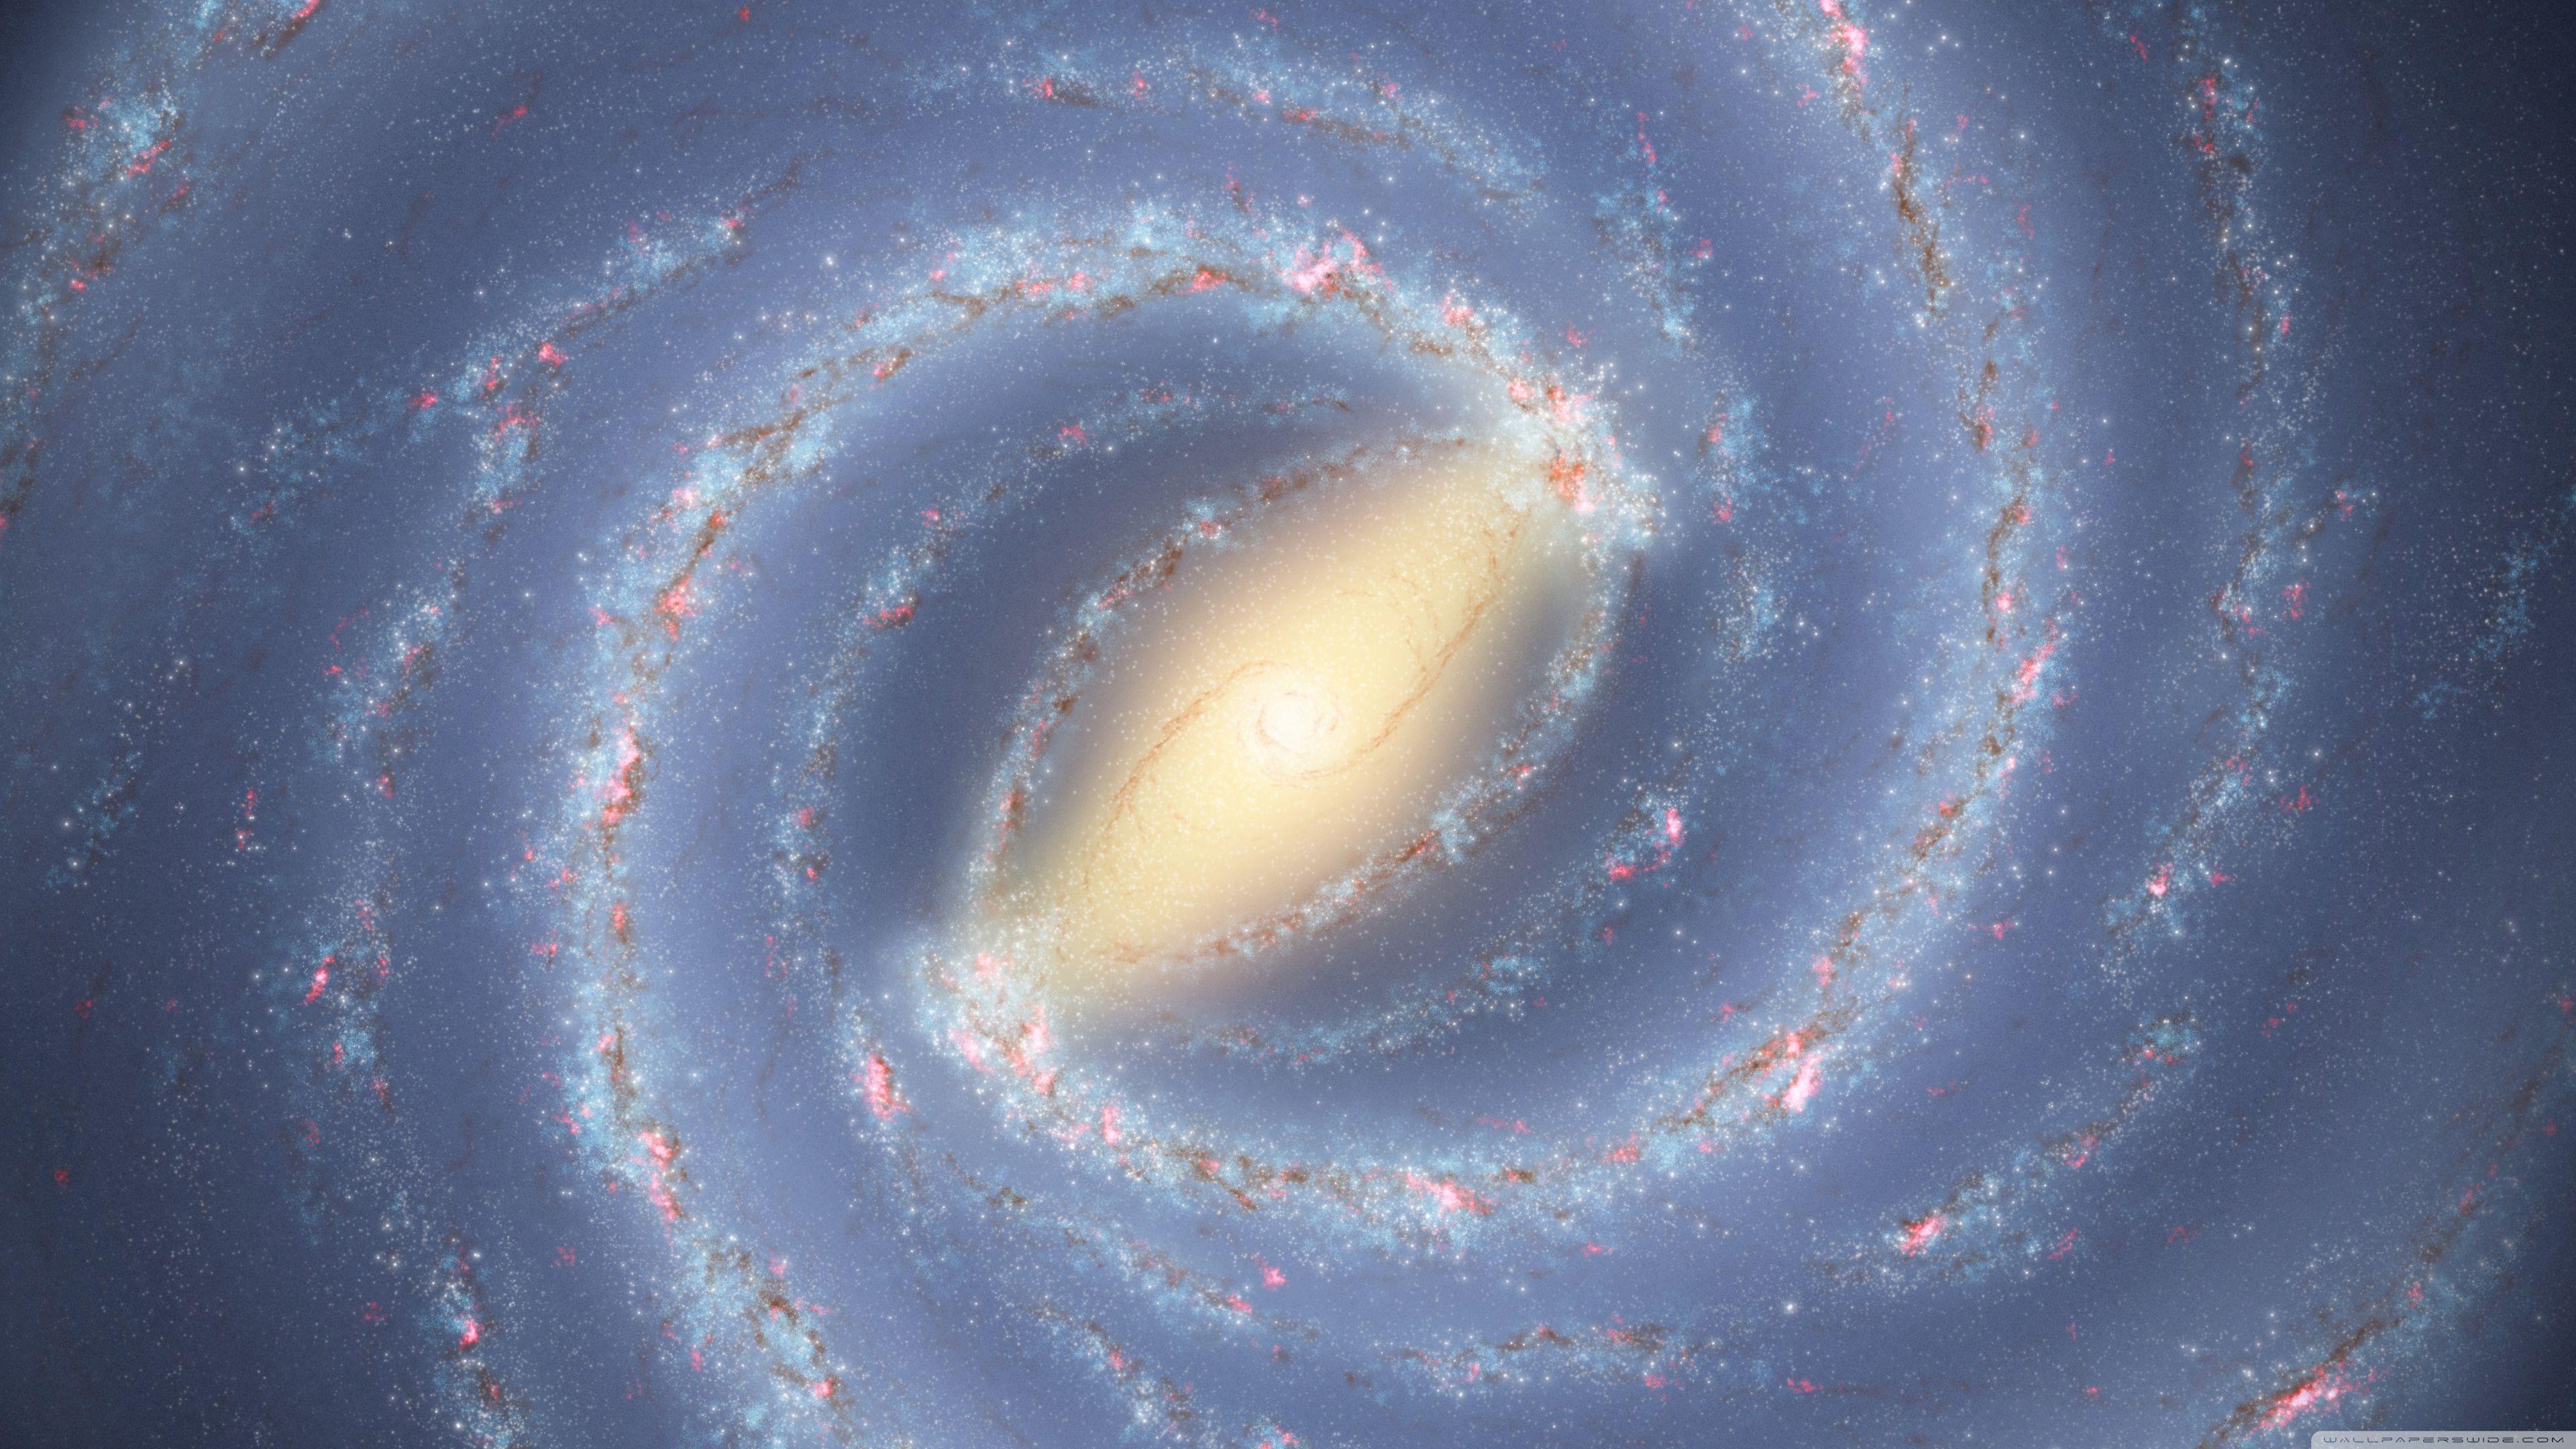 Milky Way 4K Wallpapers - Top Free Milky Way 4K Backgrounds